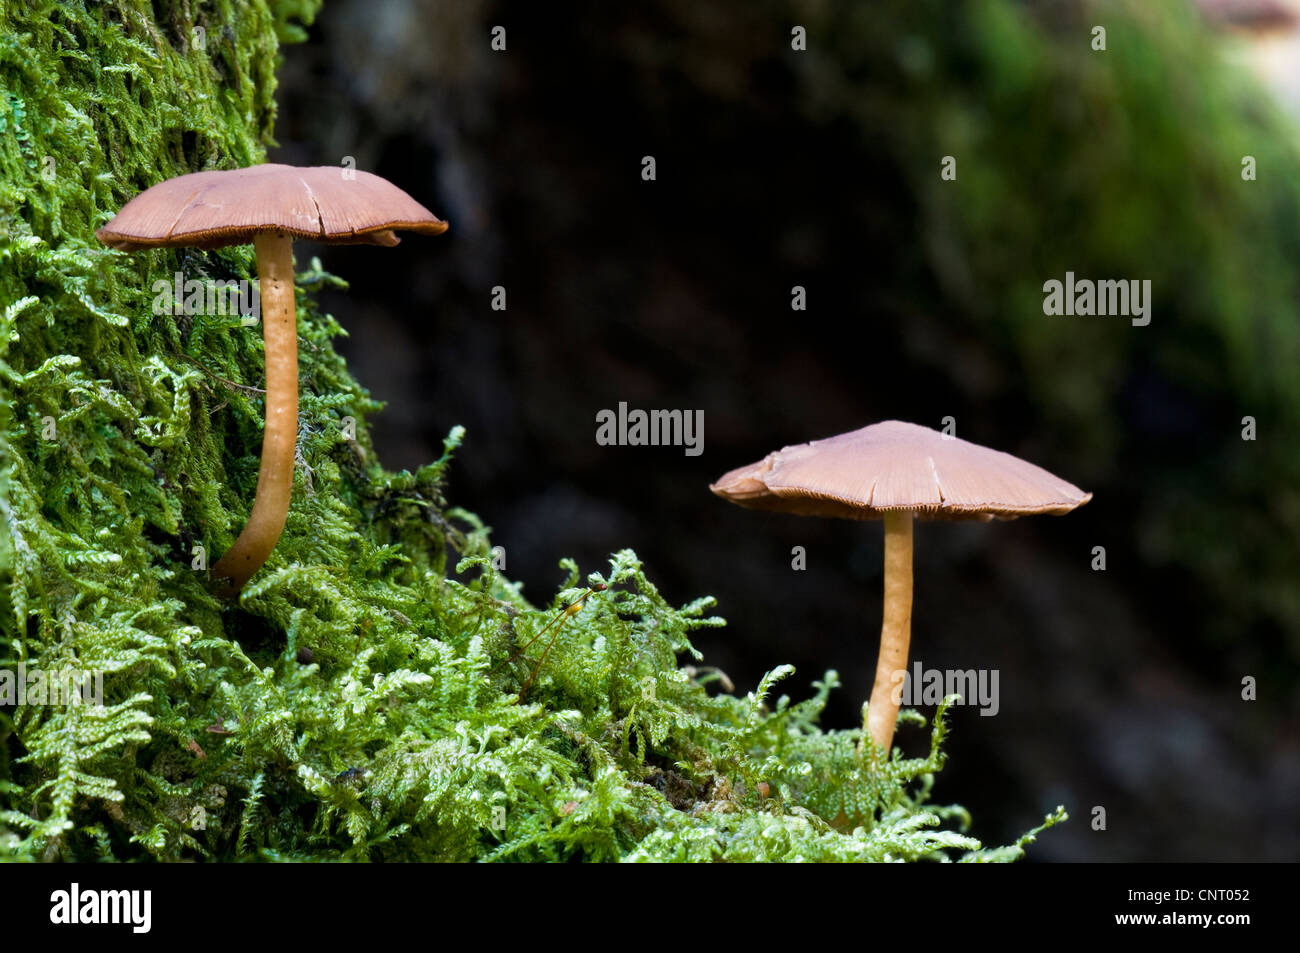 La souche commune (brittlestem Psathyrella piluliformis) champignons poussant sur une souche d'arbre couverts de mousse en haut Brede Woods Banque D'Images